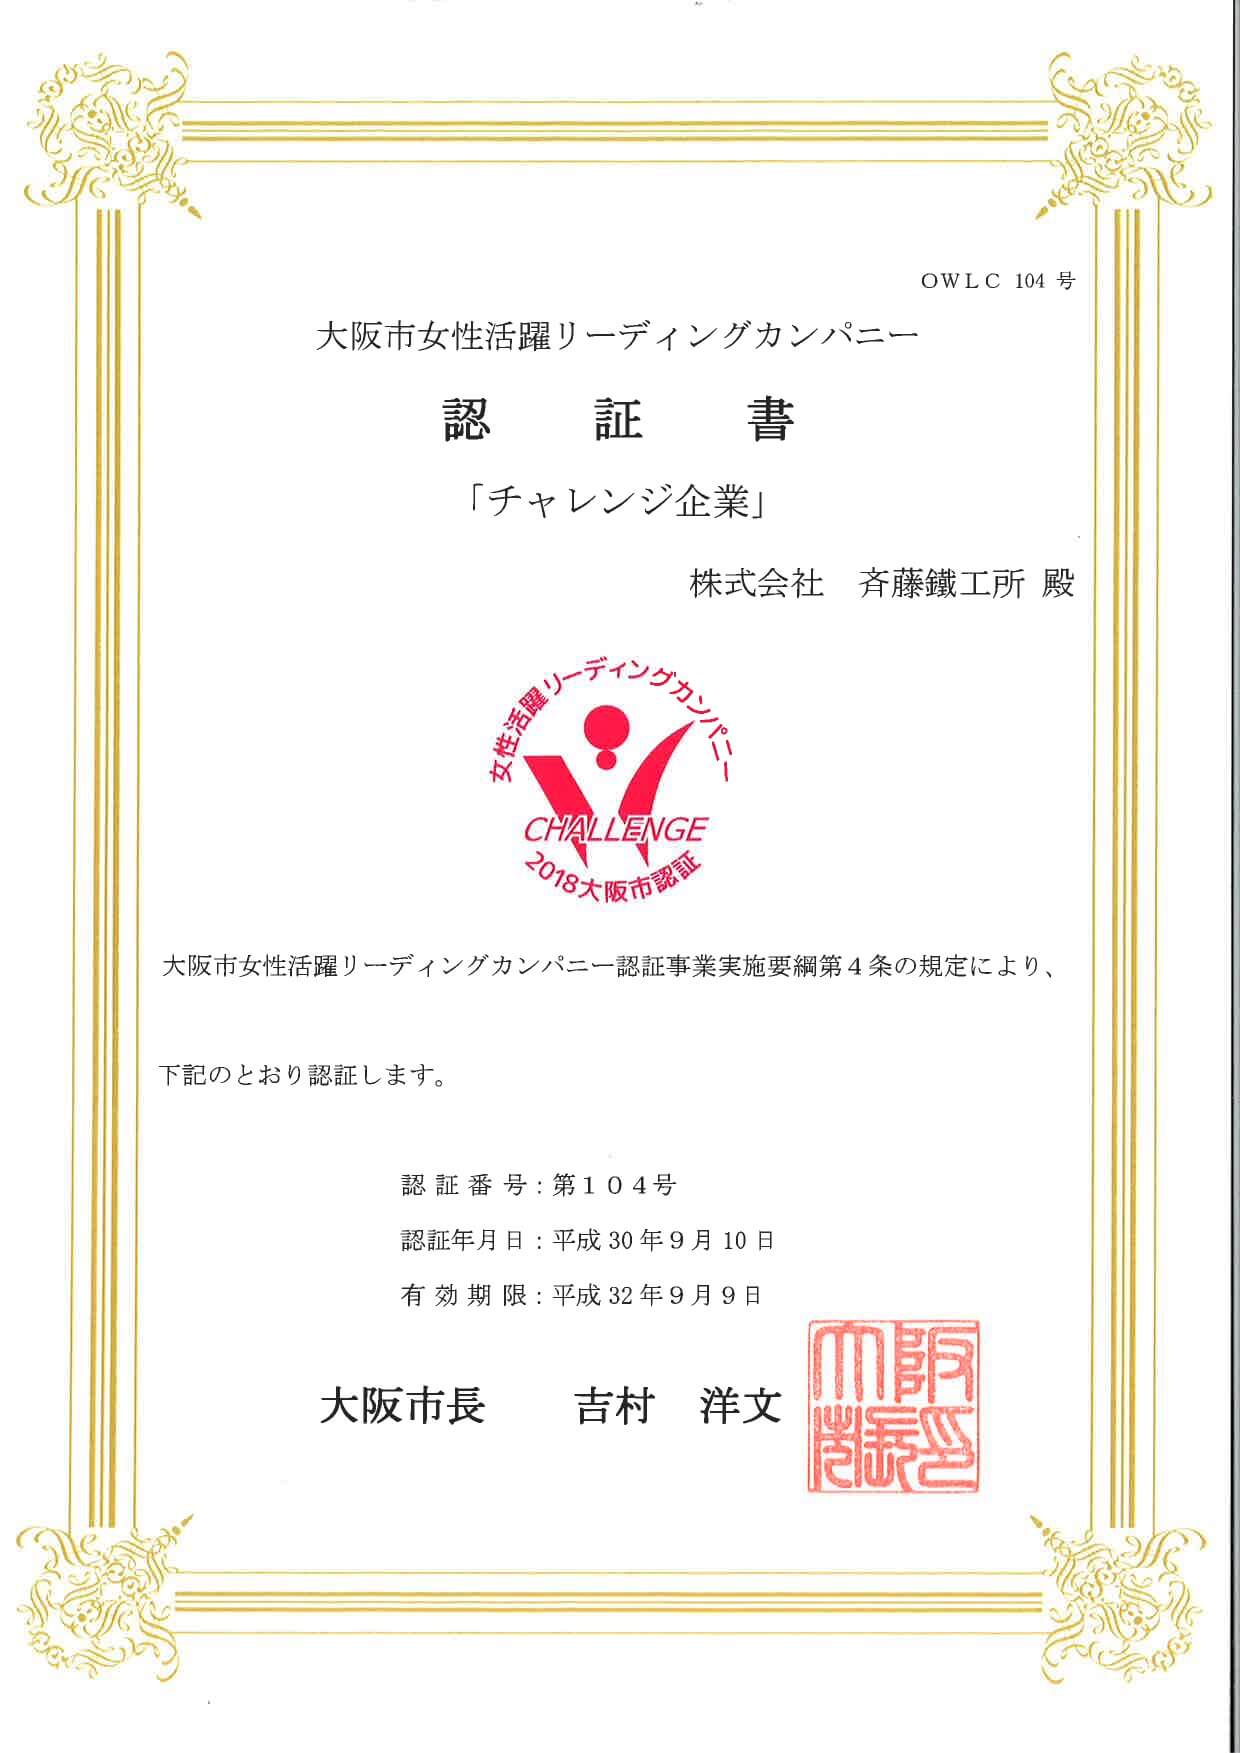 大阪市女性活躍リーディングカンパニーに認定されました。